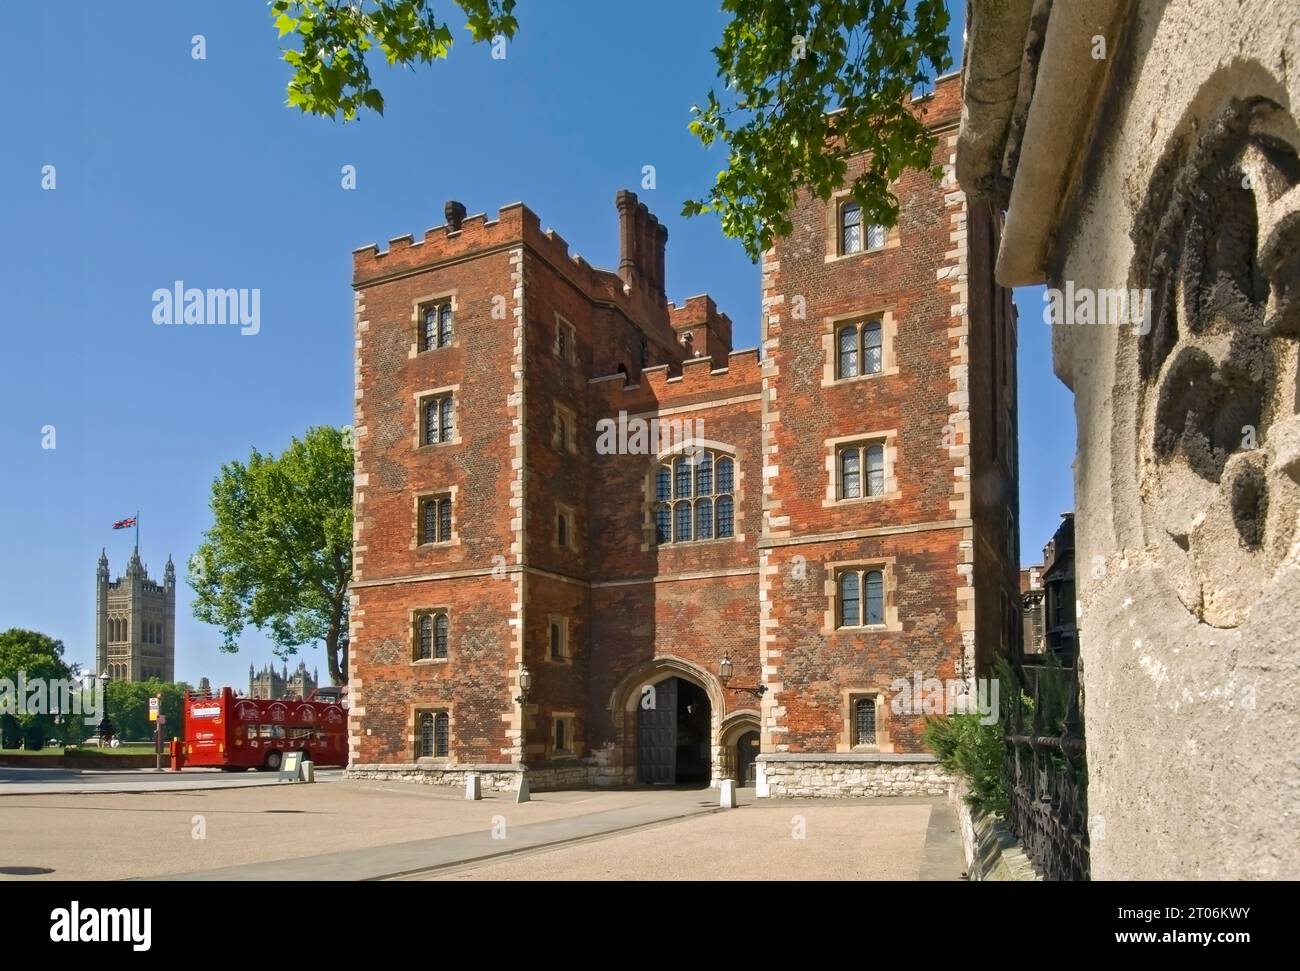 Lambeth Palace Londres. La tour de Morton's Red Brick porte Tudor formant l'entrée historique Tudor du palais de Lambeth, avec des chambres du Parlement et un bus touristique ouvert derrière. Londres Royaume-Uni Banque D'Images